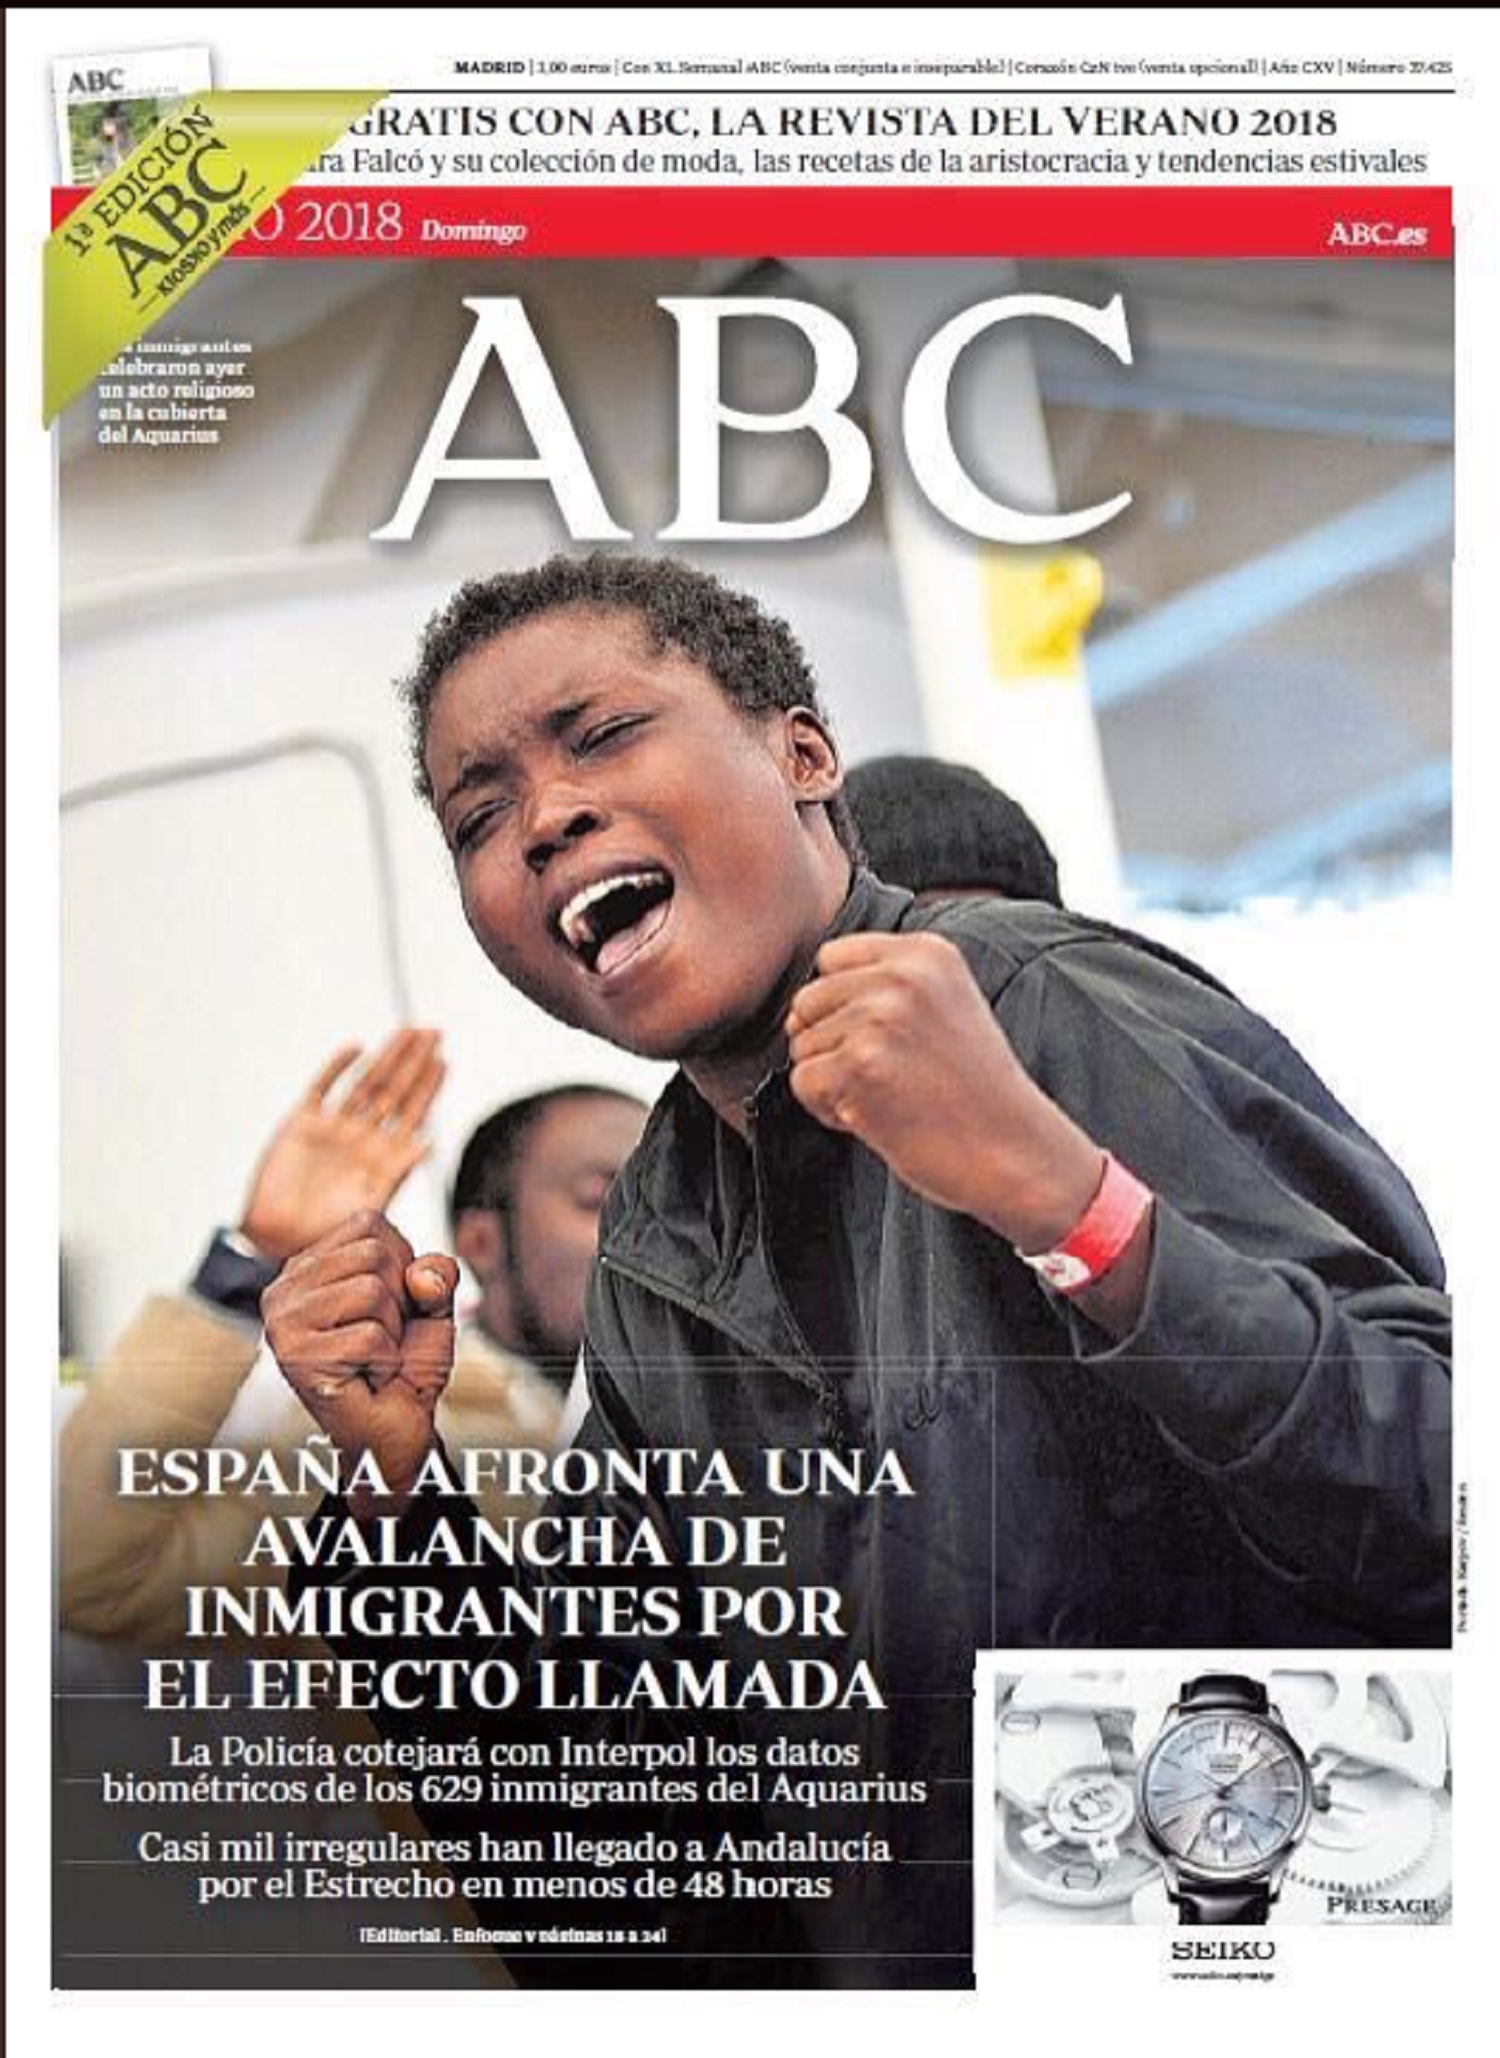 'ABC' vuelve a sacar su peor cara (ahora por "la avalancha de inmigrantes")